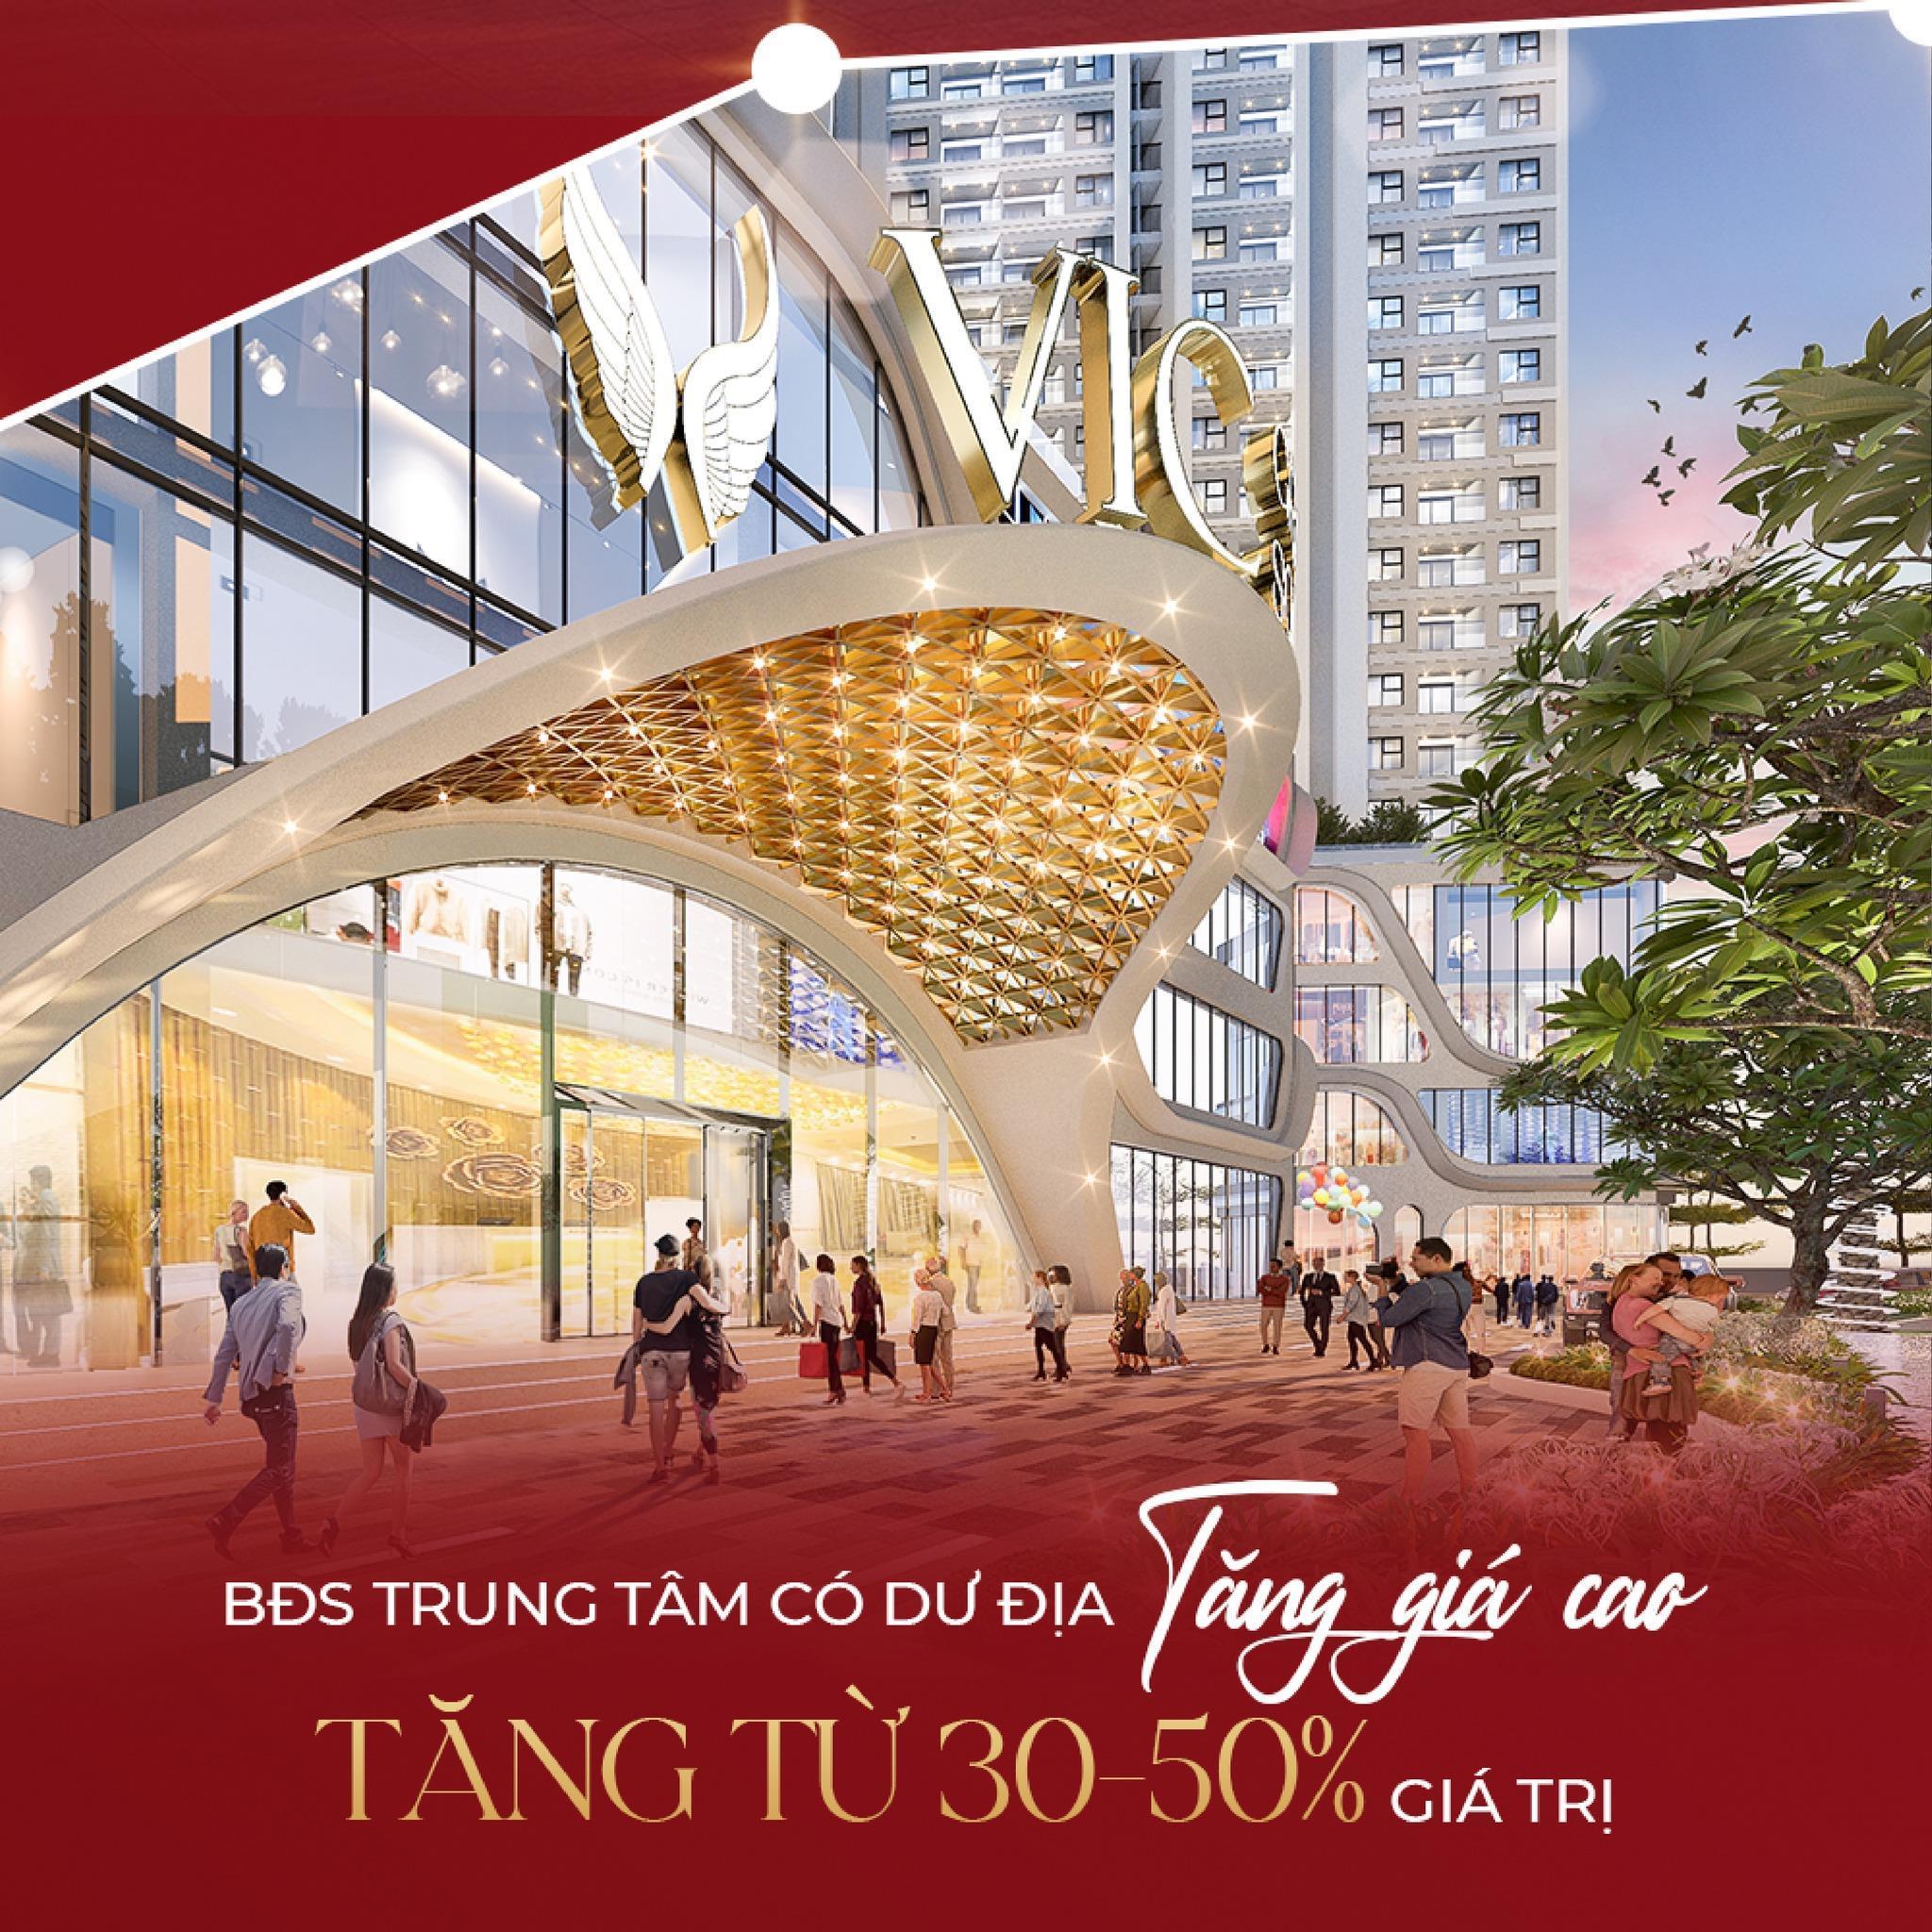 Mở bán đợt 1 căn hộ chung cư cao cấp Vic Grand Square thành phố Việt Trì. Quà tặng lên đến 40 triệu - Ảnh 2